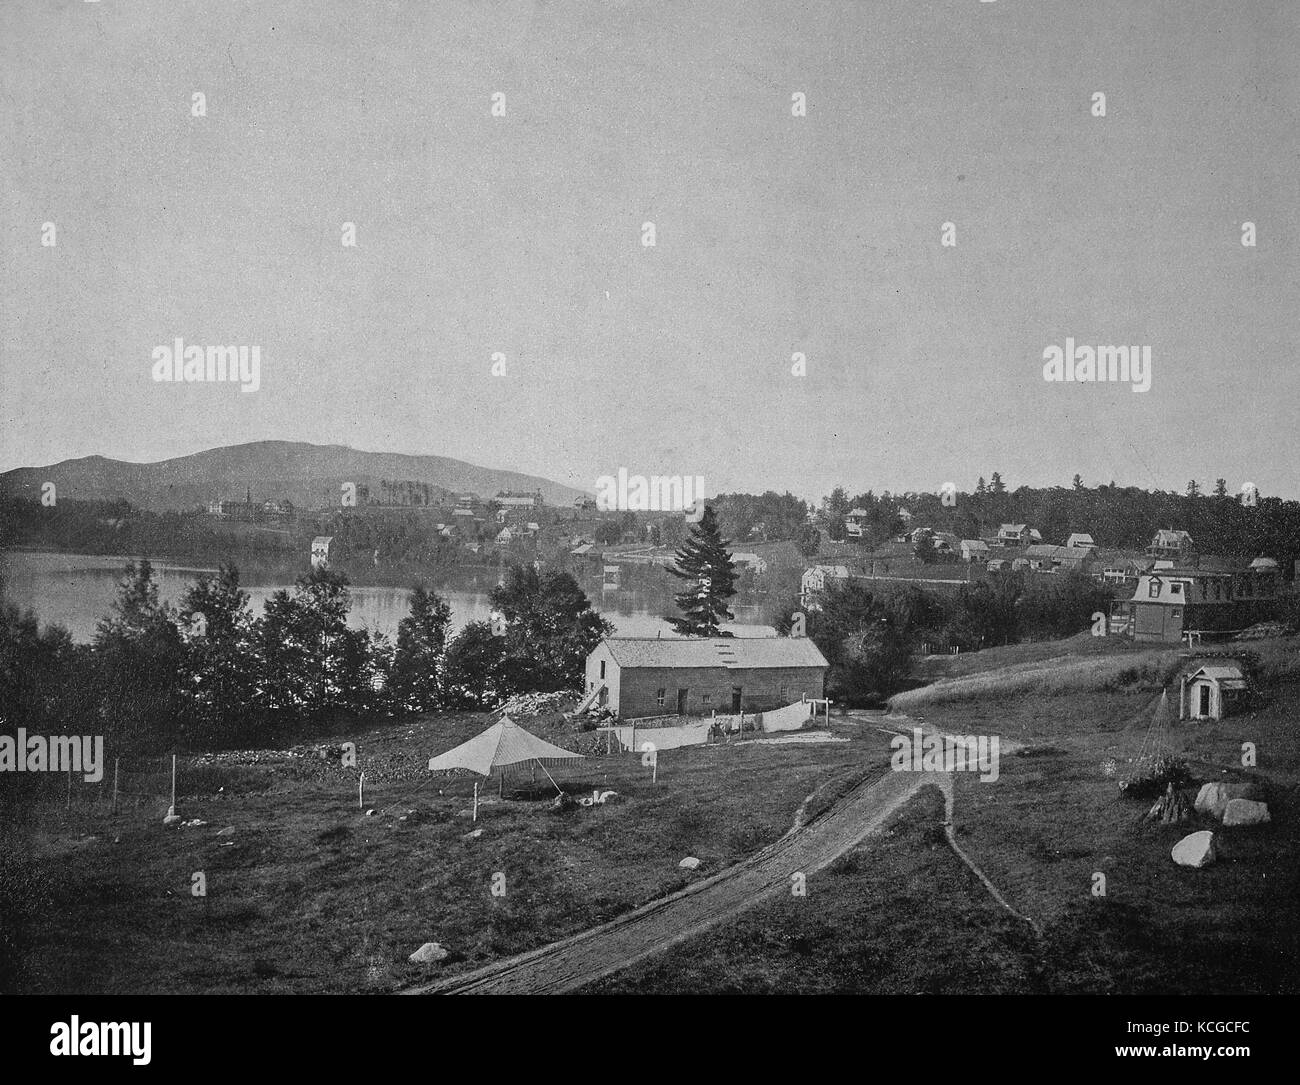 Vereinigten Staaten von Amerika, die Landschaft in den Adirondacks, Badeort an Placid Lake, Staat New York, digital verbesserte Reproduktion einer historischen Foto aus dem (geschätzten) Jahr 1899 Stockfoto